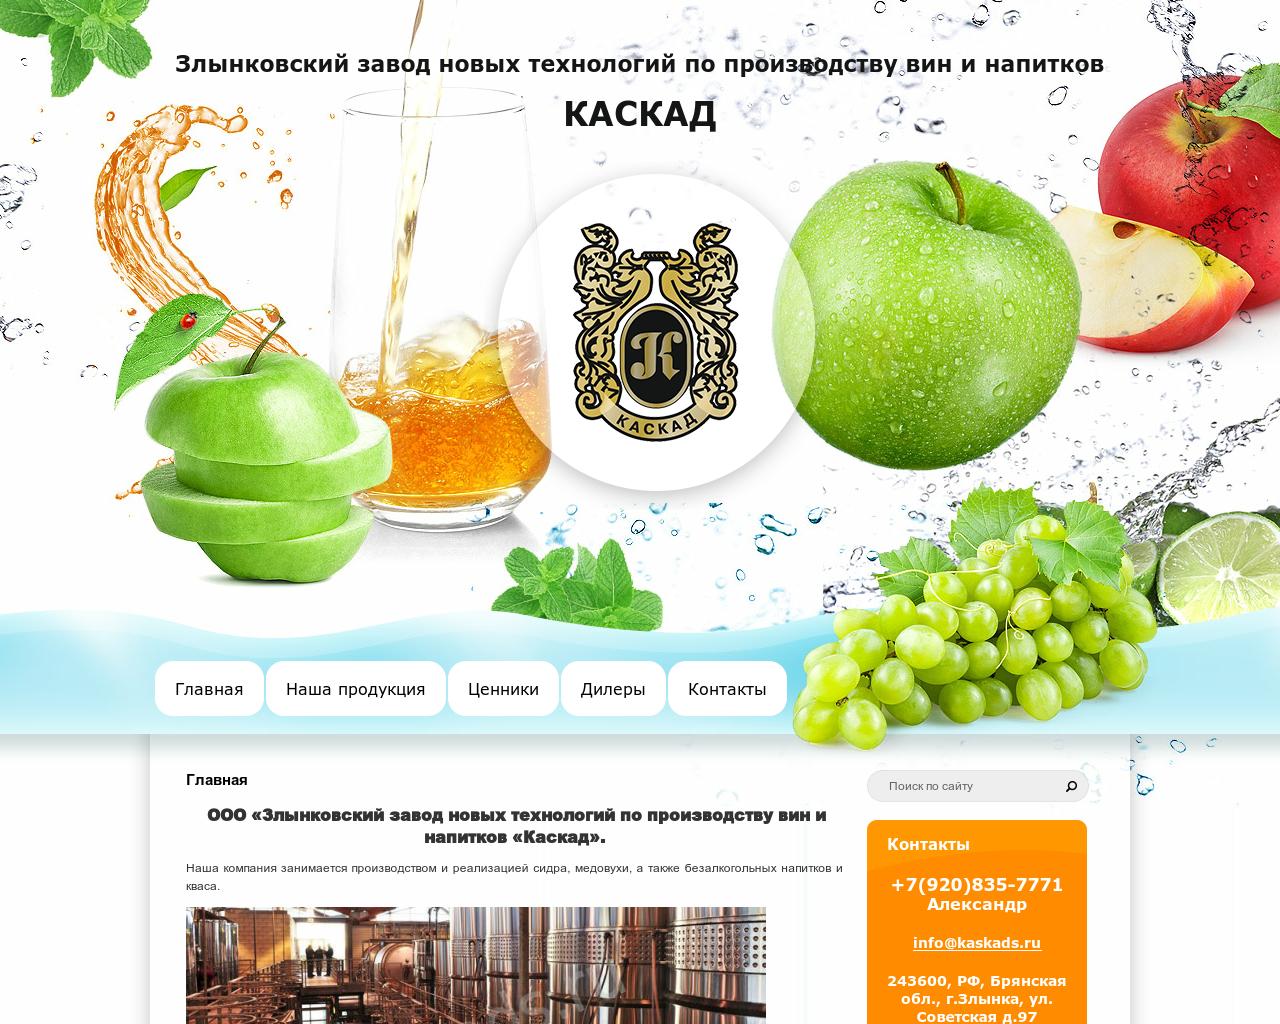 Изображение сайта kaskads.ru в разрешении 1280x1024